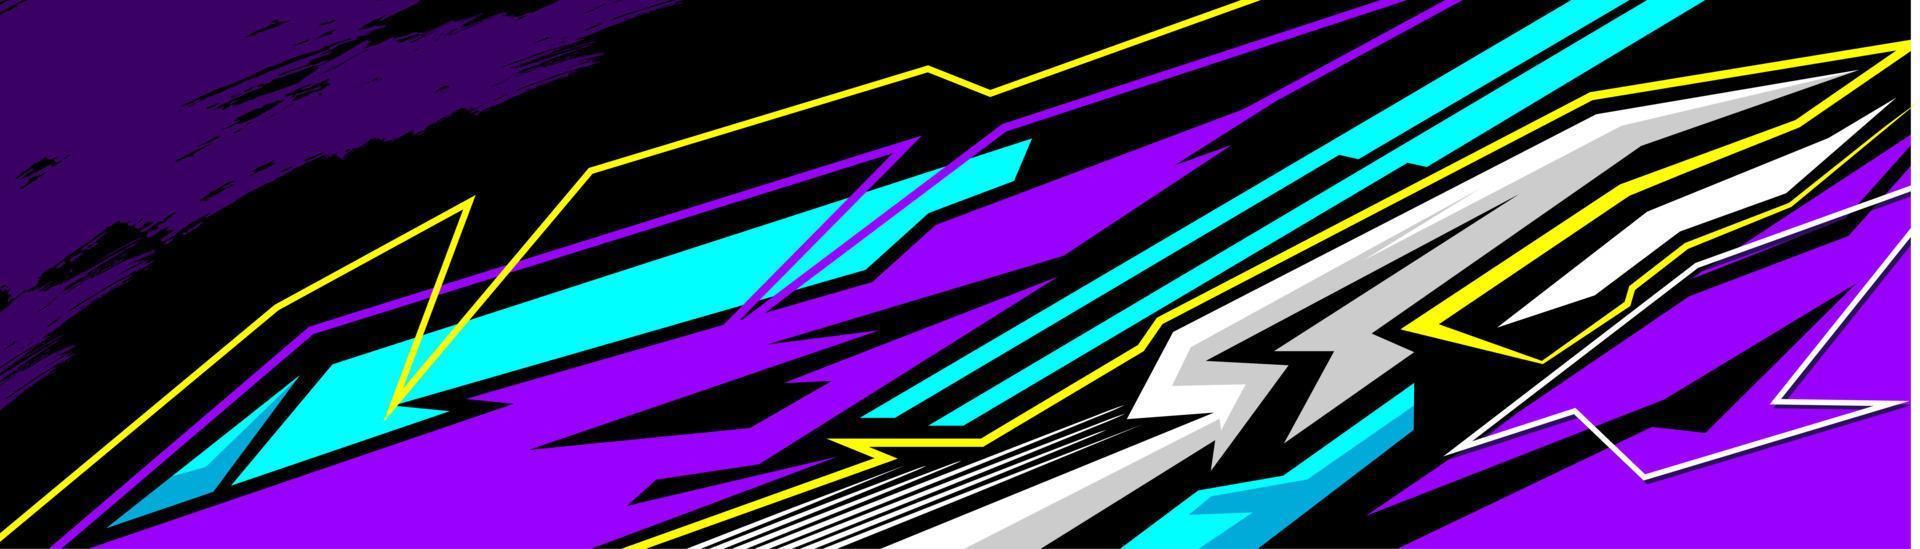 bil dekal wrap design vektor. grafisk abstrakt stripe racing bakgrund kit design för fordon, racerbil, rally, äventyr och livery vektor